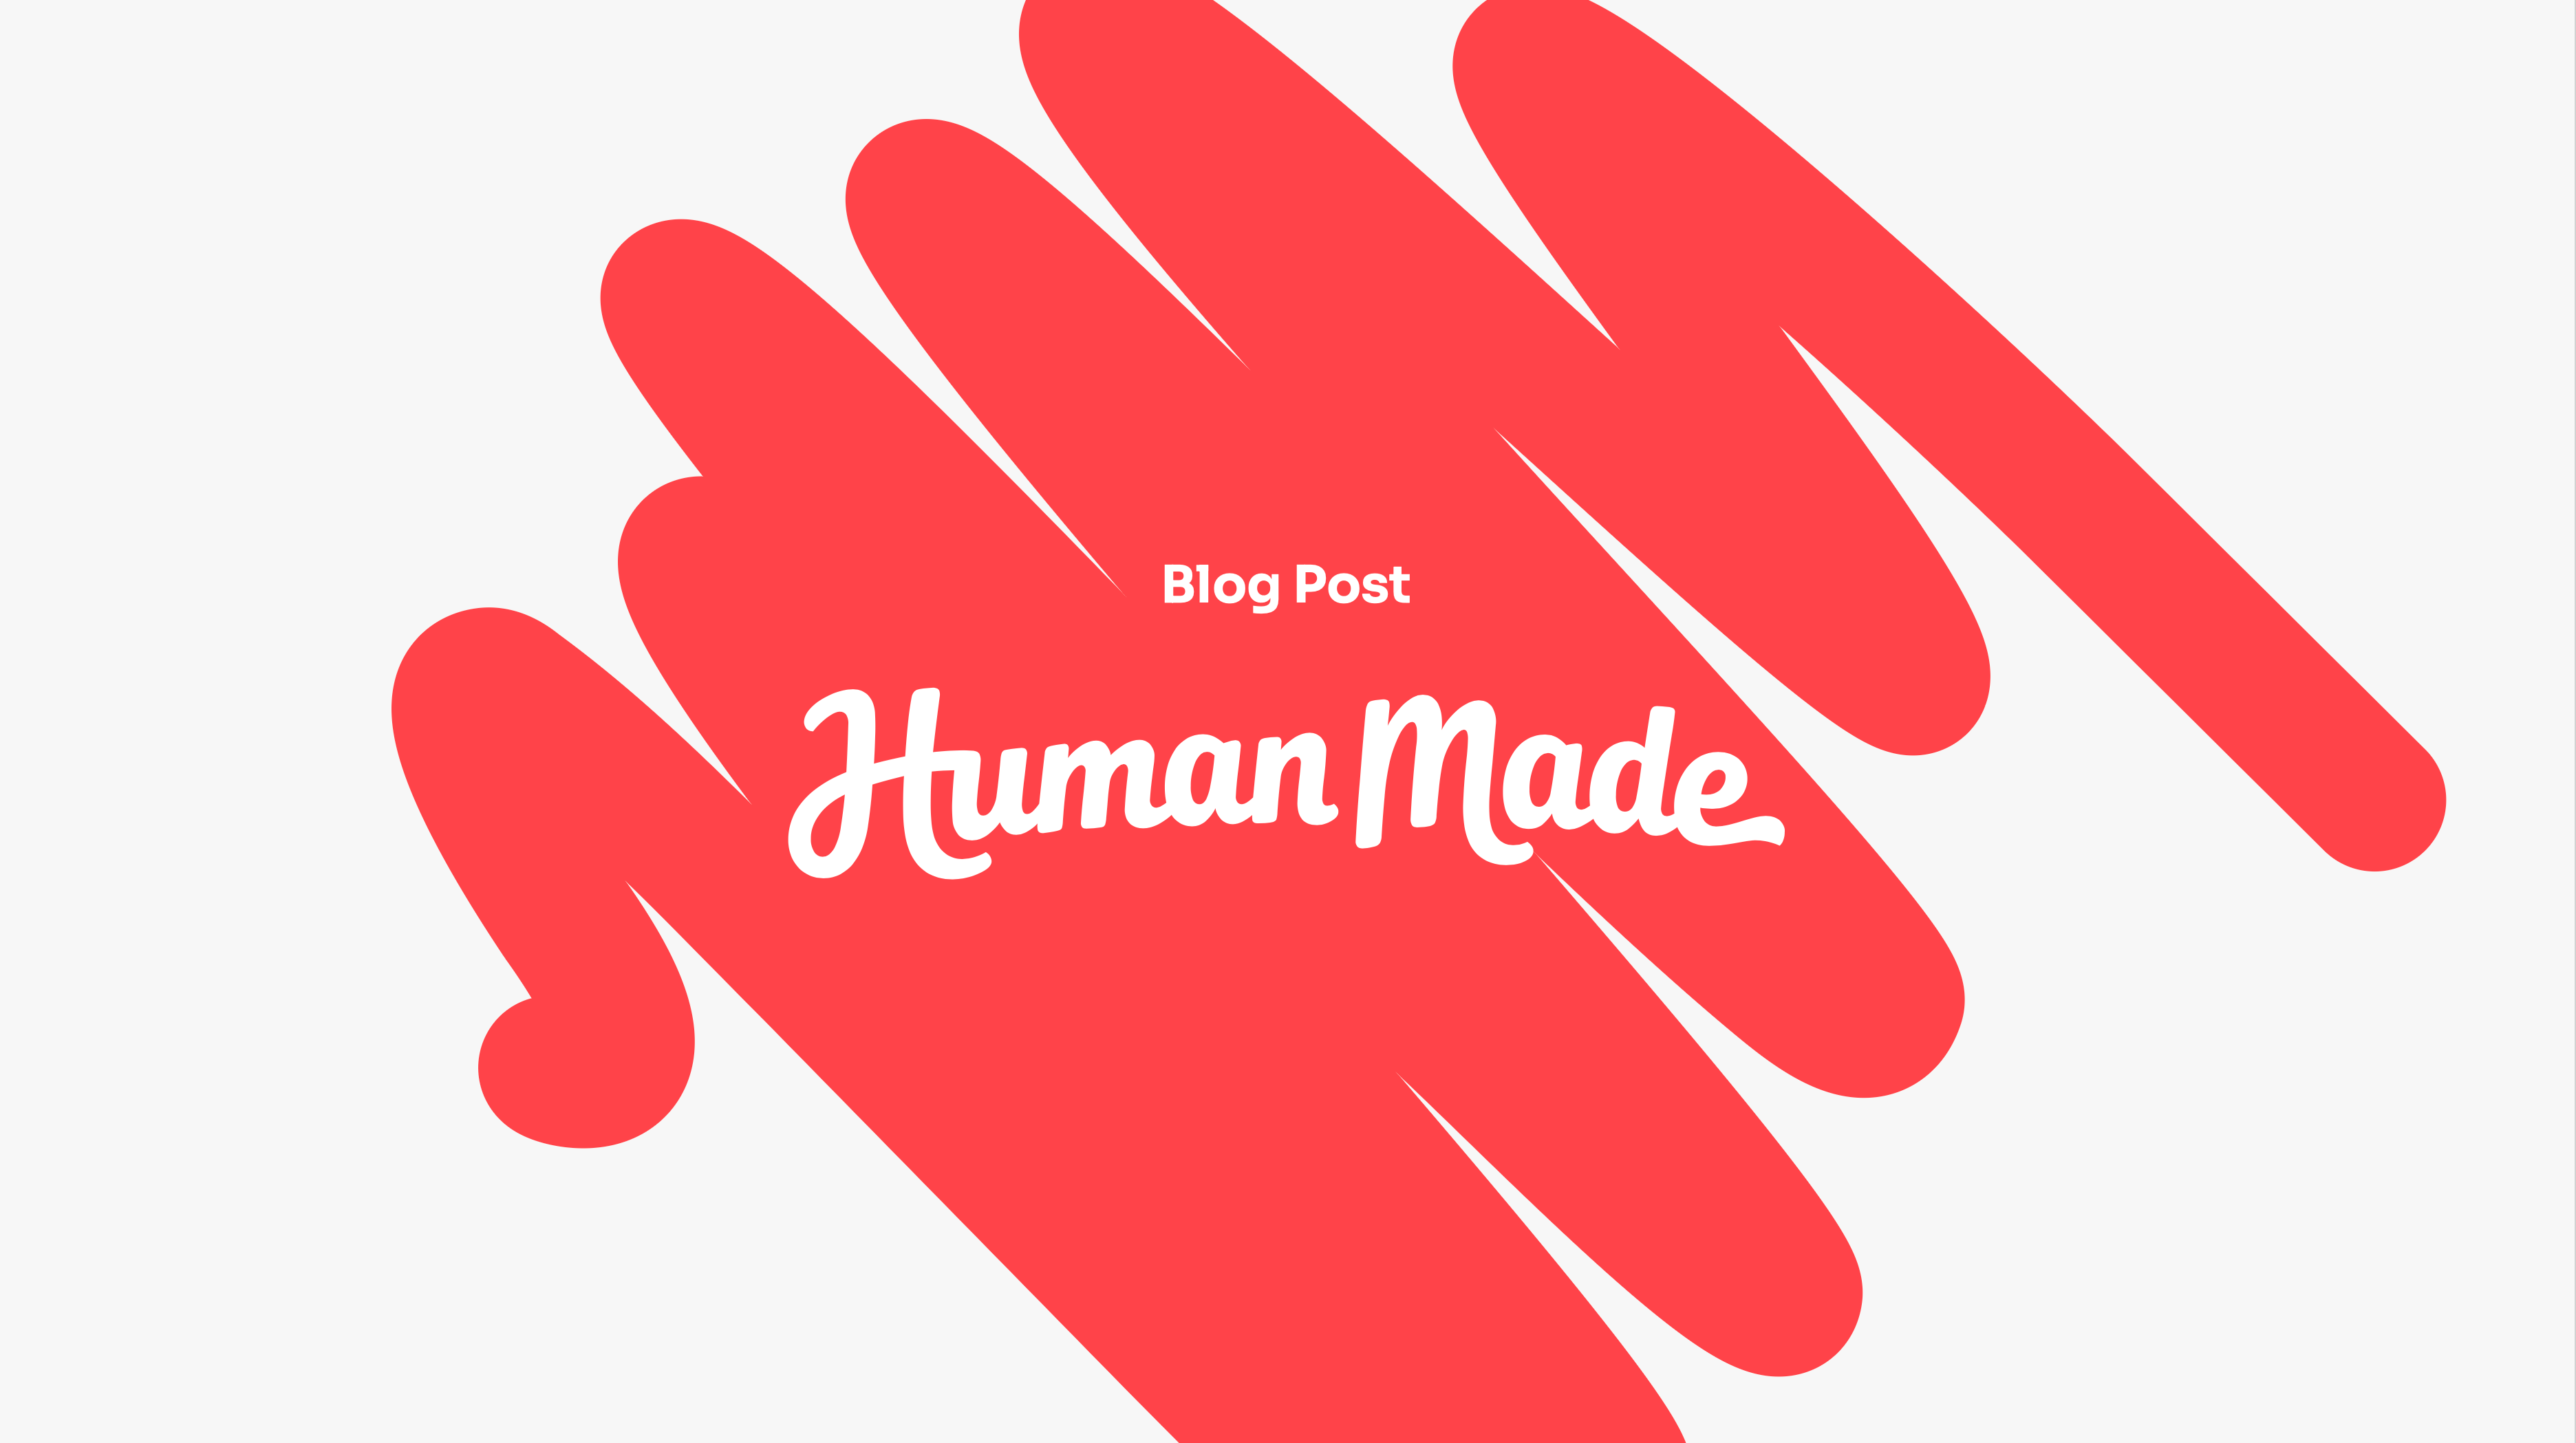 2020 at Human Made – Human Made